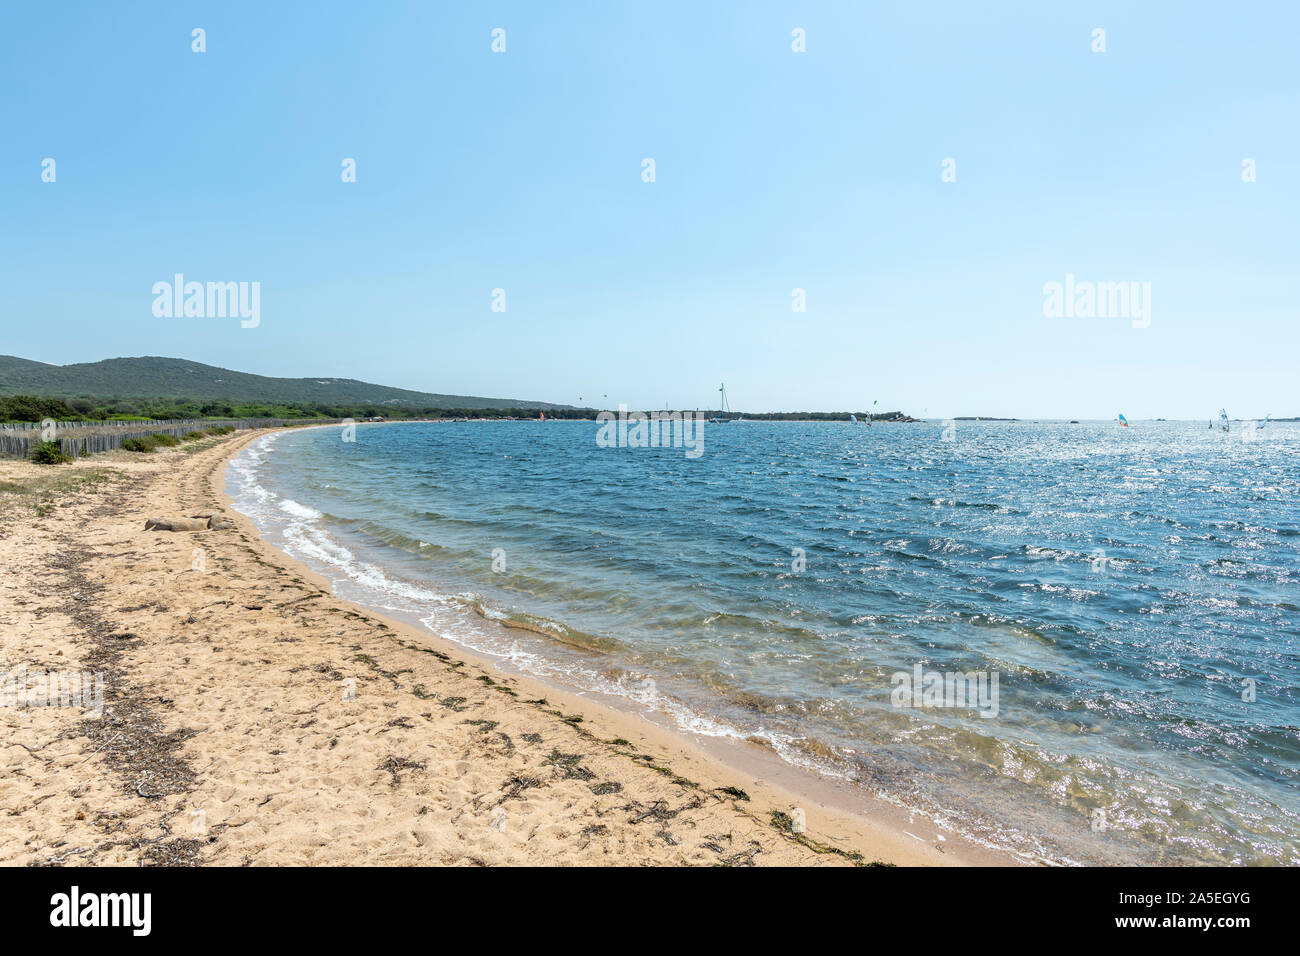 Plage de sable sauvages pendant l'été avec de l'eau activités sportives, Figari, Corse, France ( avec copie grand espace dans le ciel) Banque D'Images